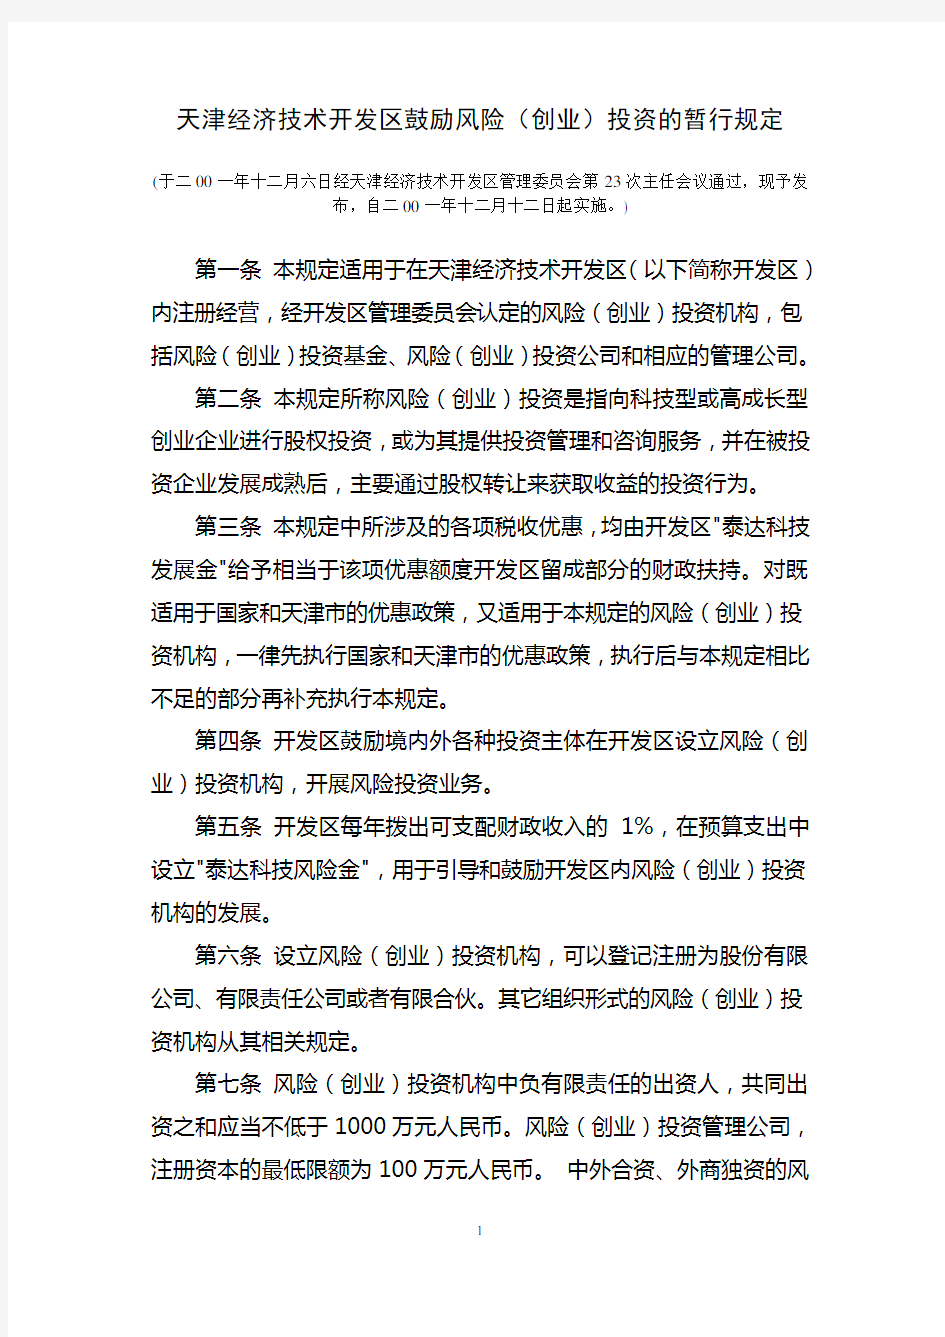 (完整版)天津经济技术开发区鼓励风险(创业)投资的暂行规定